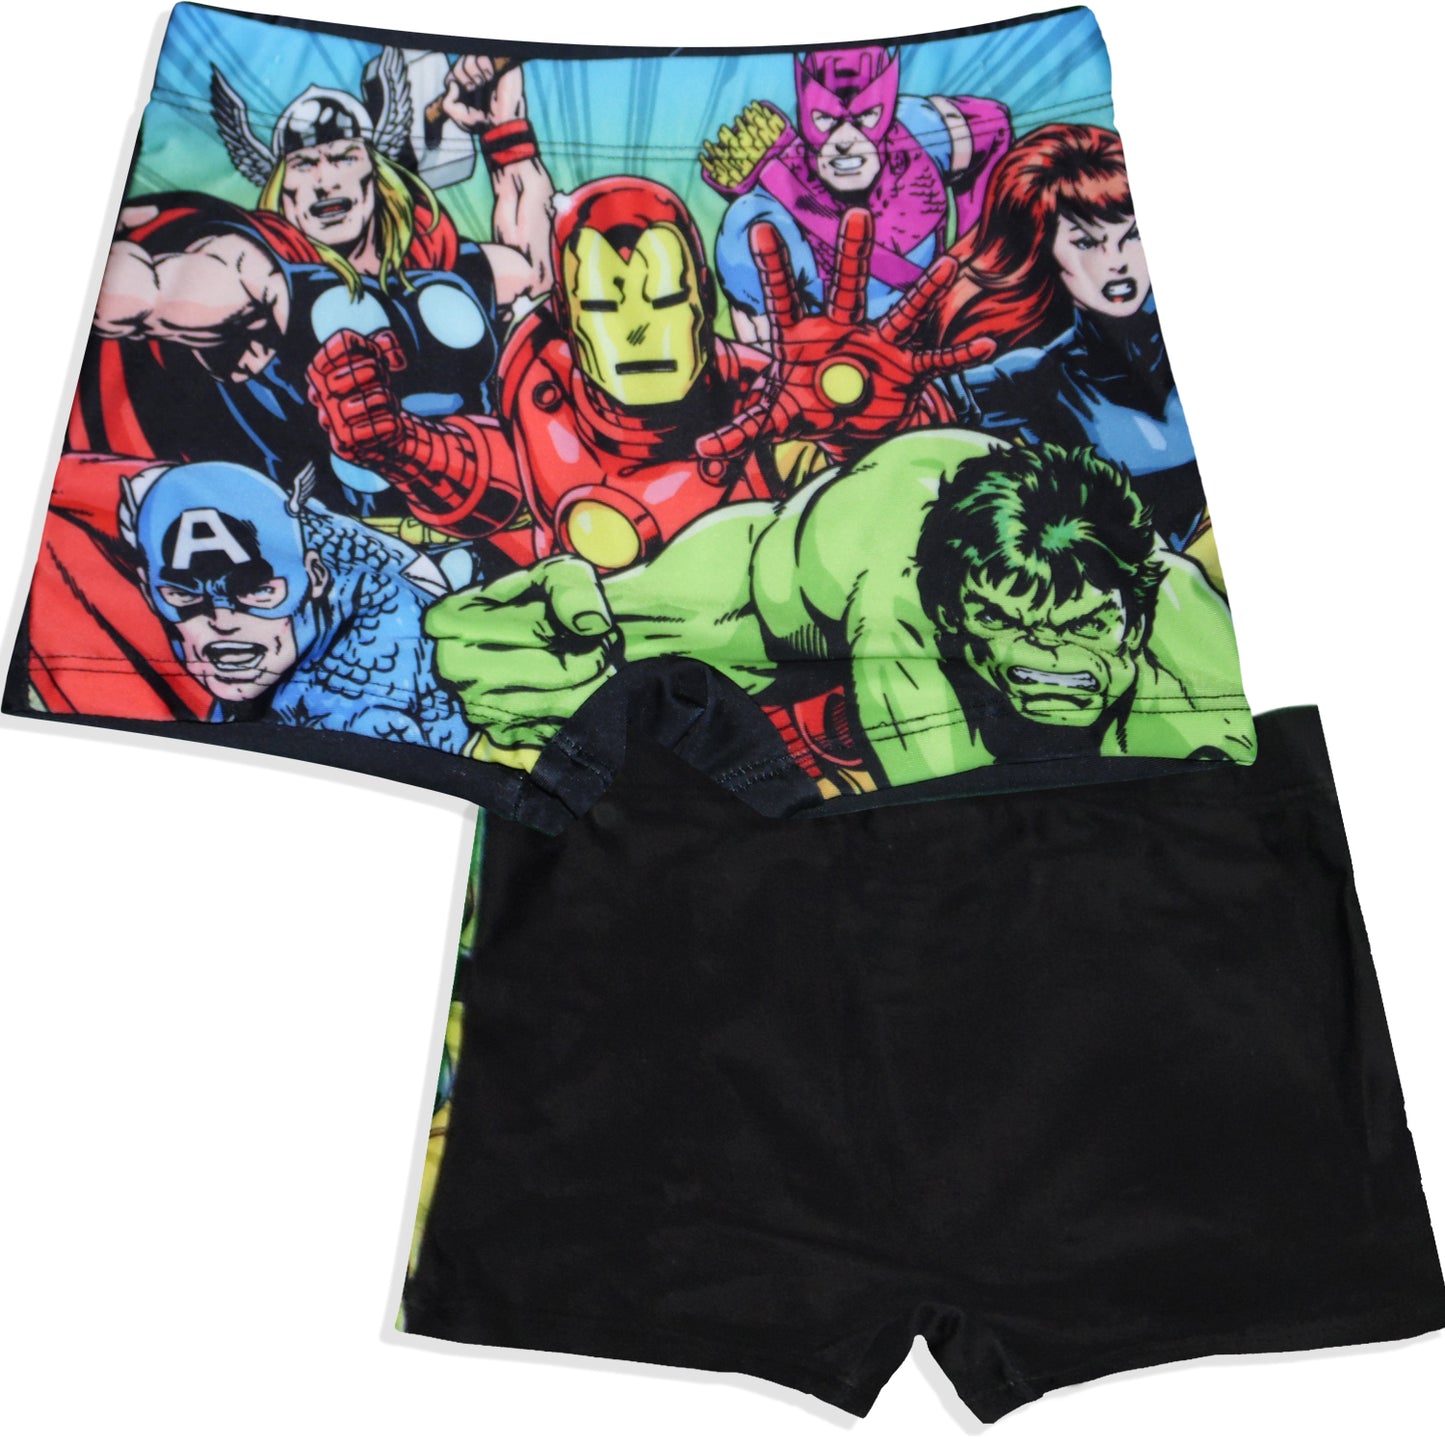 Marvel Avengers Swim Shorts for Boys